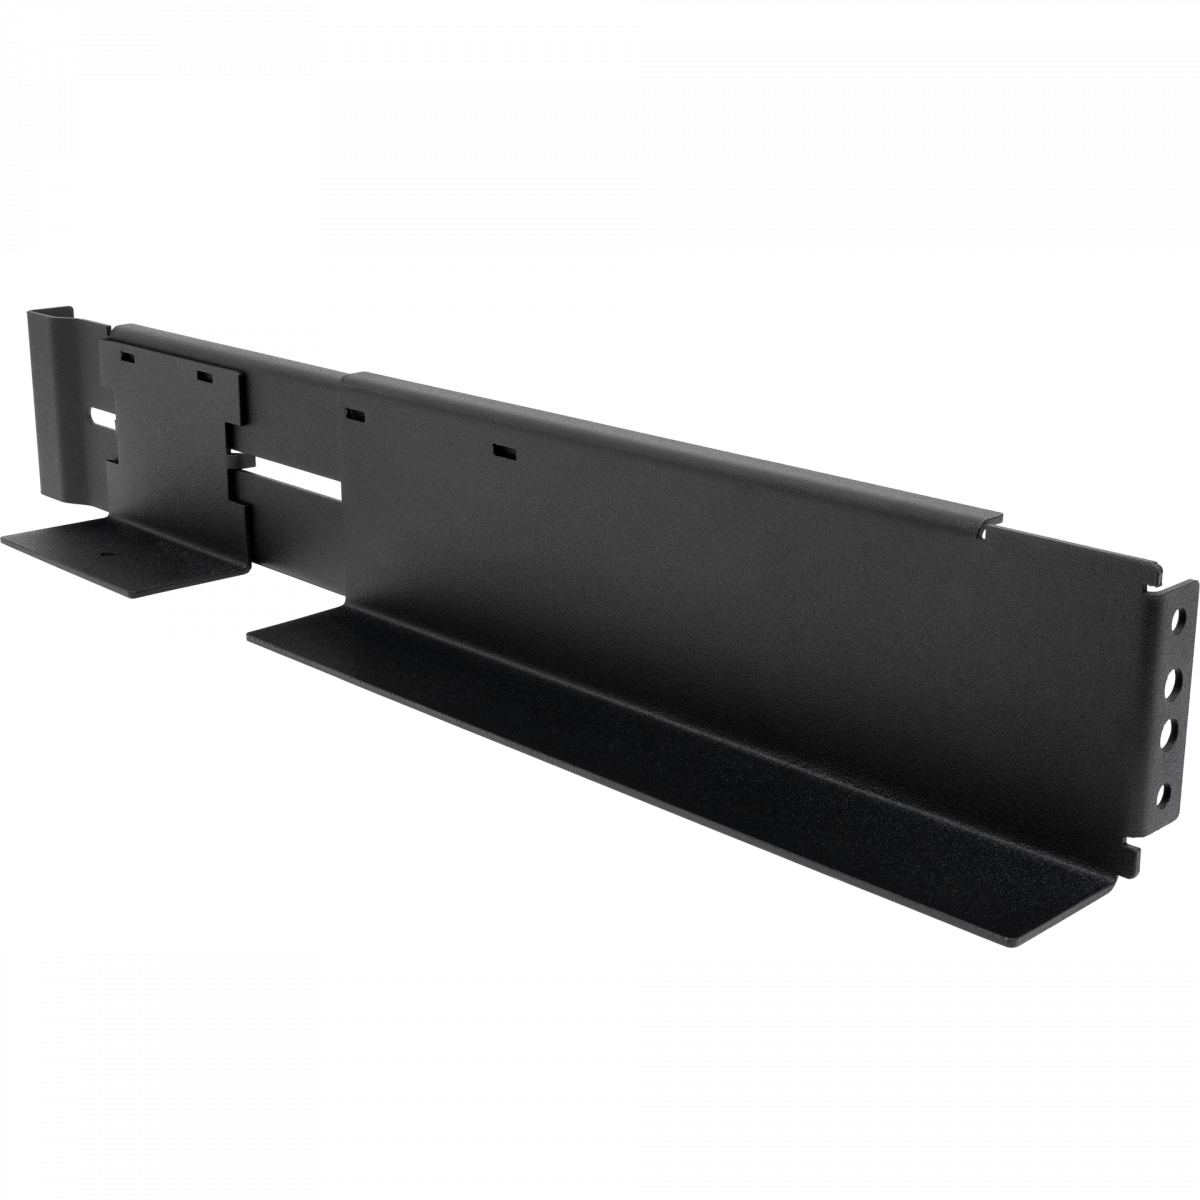 Салазки SNR-UPS-RK для крепления в стойку глубиной 600-800мм, ИБП серии SNR-UPS